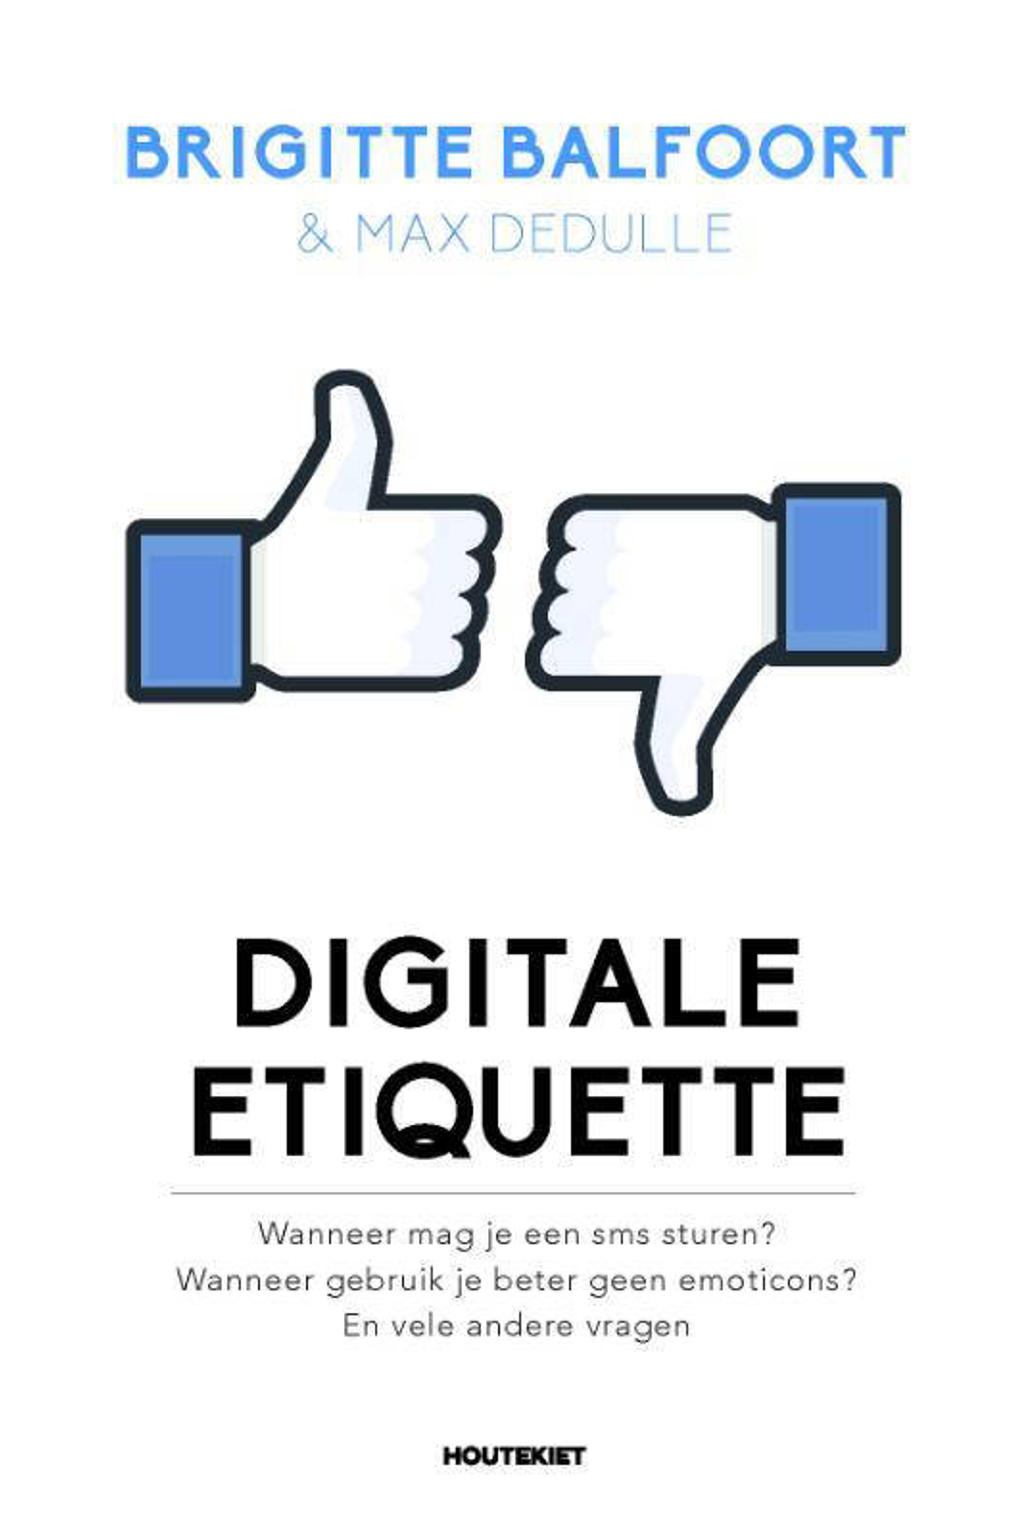 Digitale etiquette - Brigitte Balfoort en Max Dedulle